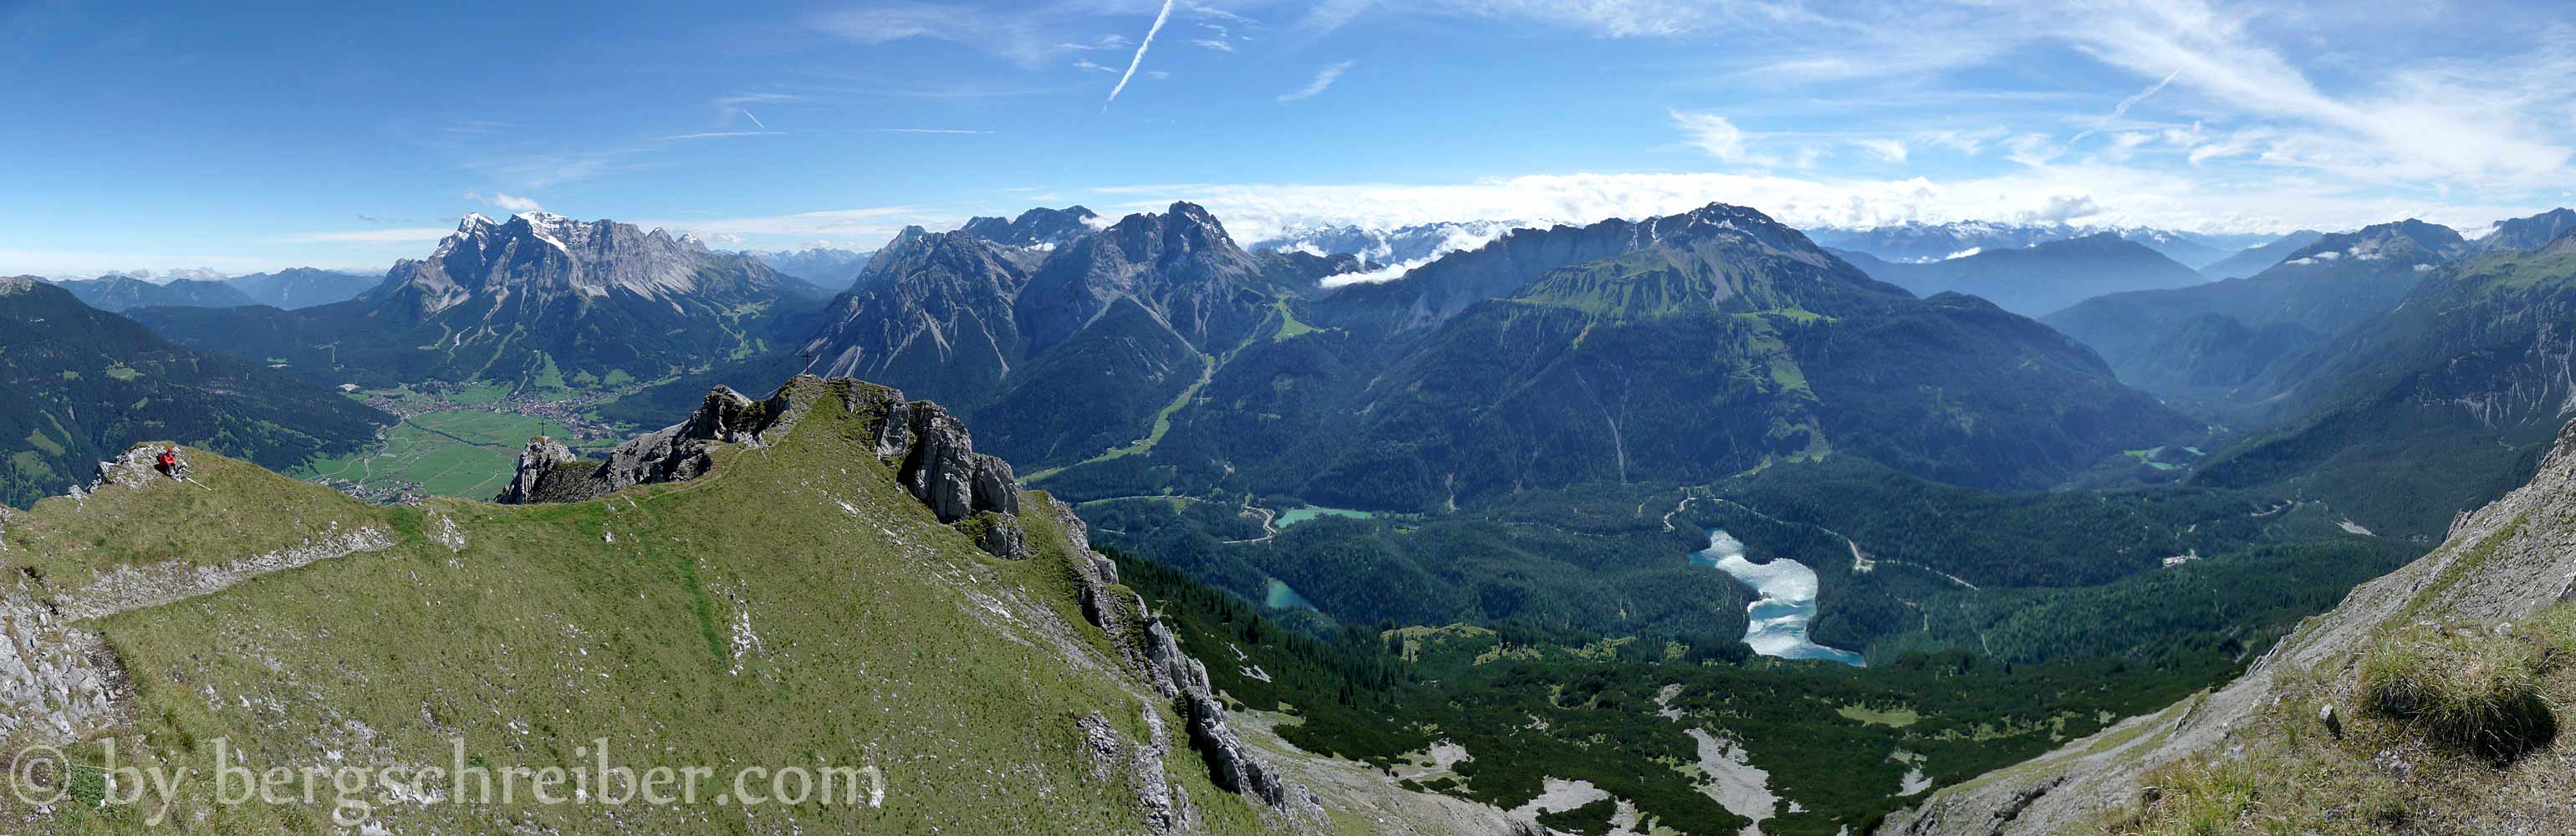 Gipfelpanorama vom Grubigstein mit Blick zum Wettersteinmassiv und den Mieminger Bergen: Die Rundtour Nassereither Alm quert vom Marienbergjoch (Bildmitte) die Almböden des Wannig (rechts).